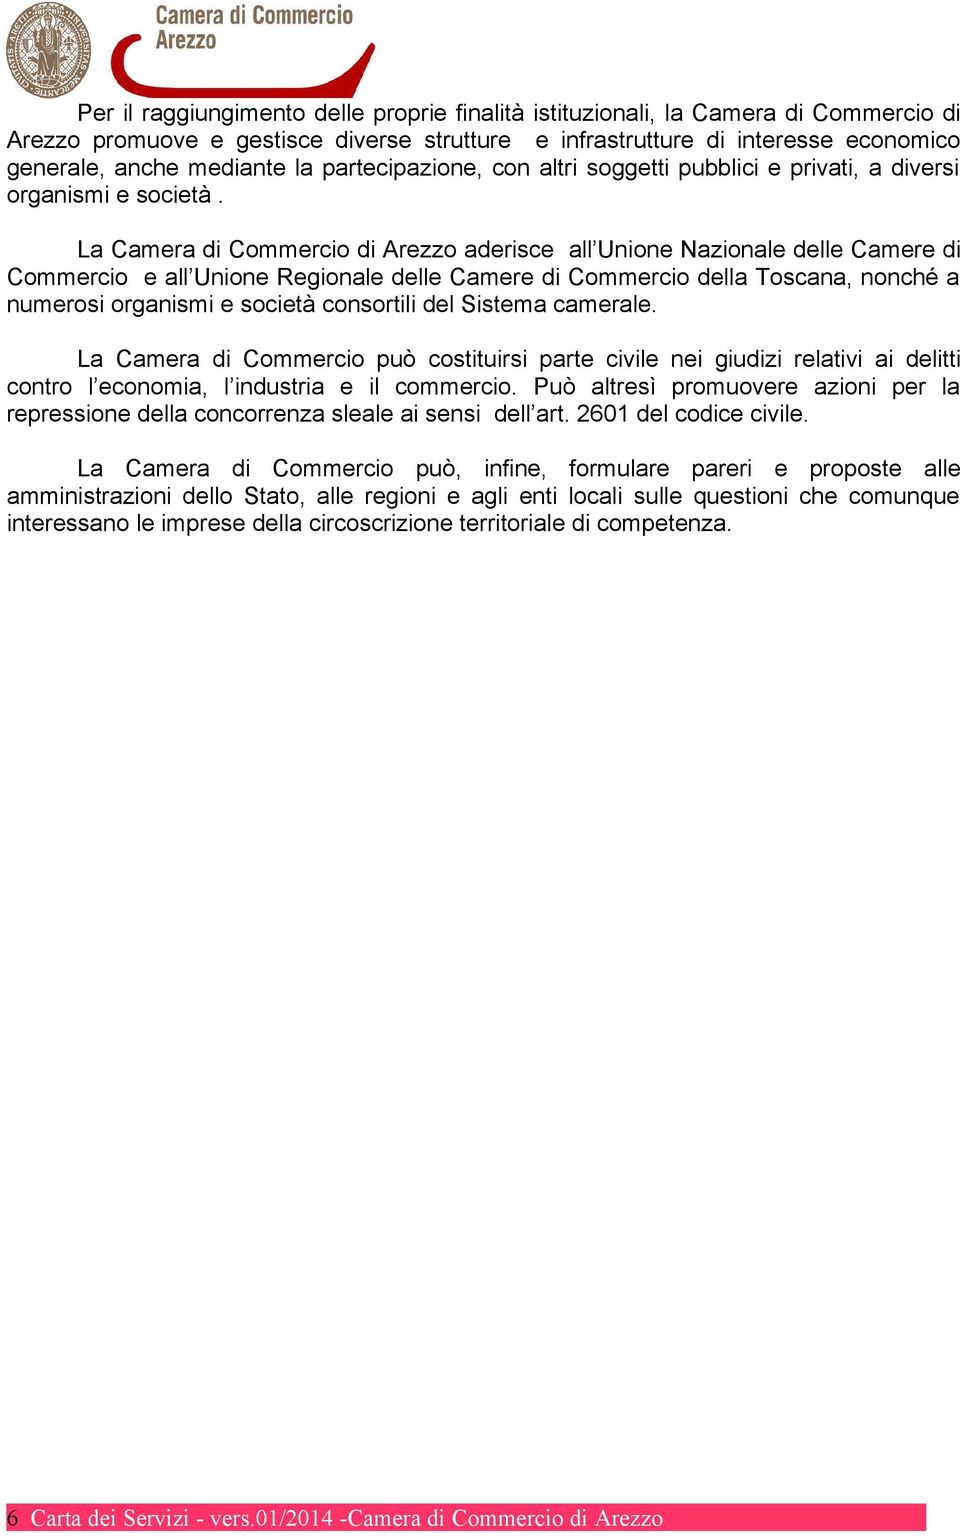 La Camera di Commercio di Arezzo aderisce all Unione Nazionale delle Camere di Commercio e all Unione Regionale delle Camere di Commercio della Toscana, nonché a numerosi organismi e società